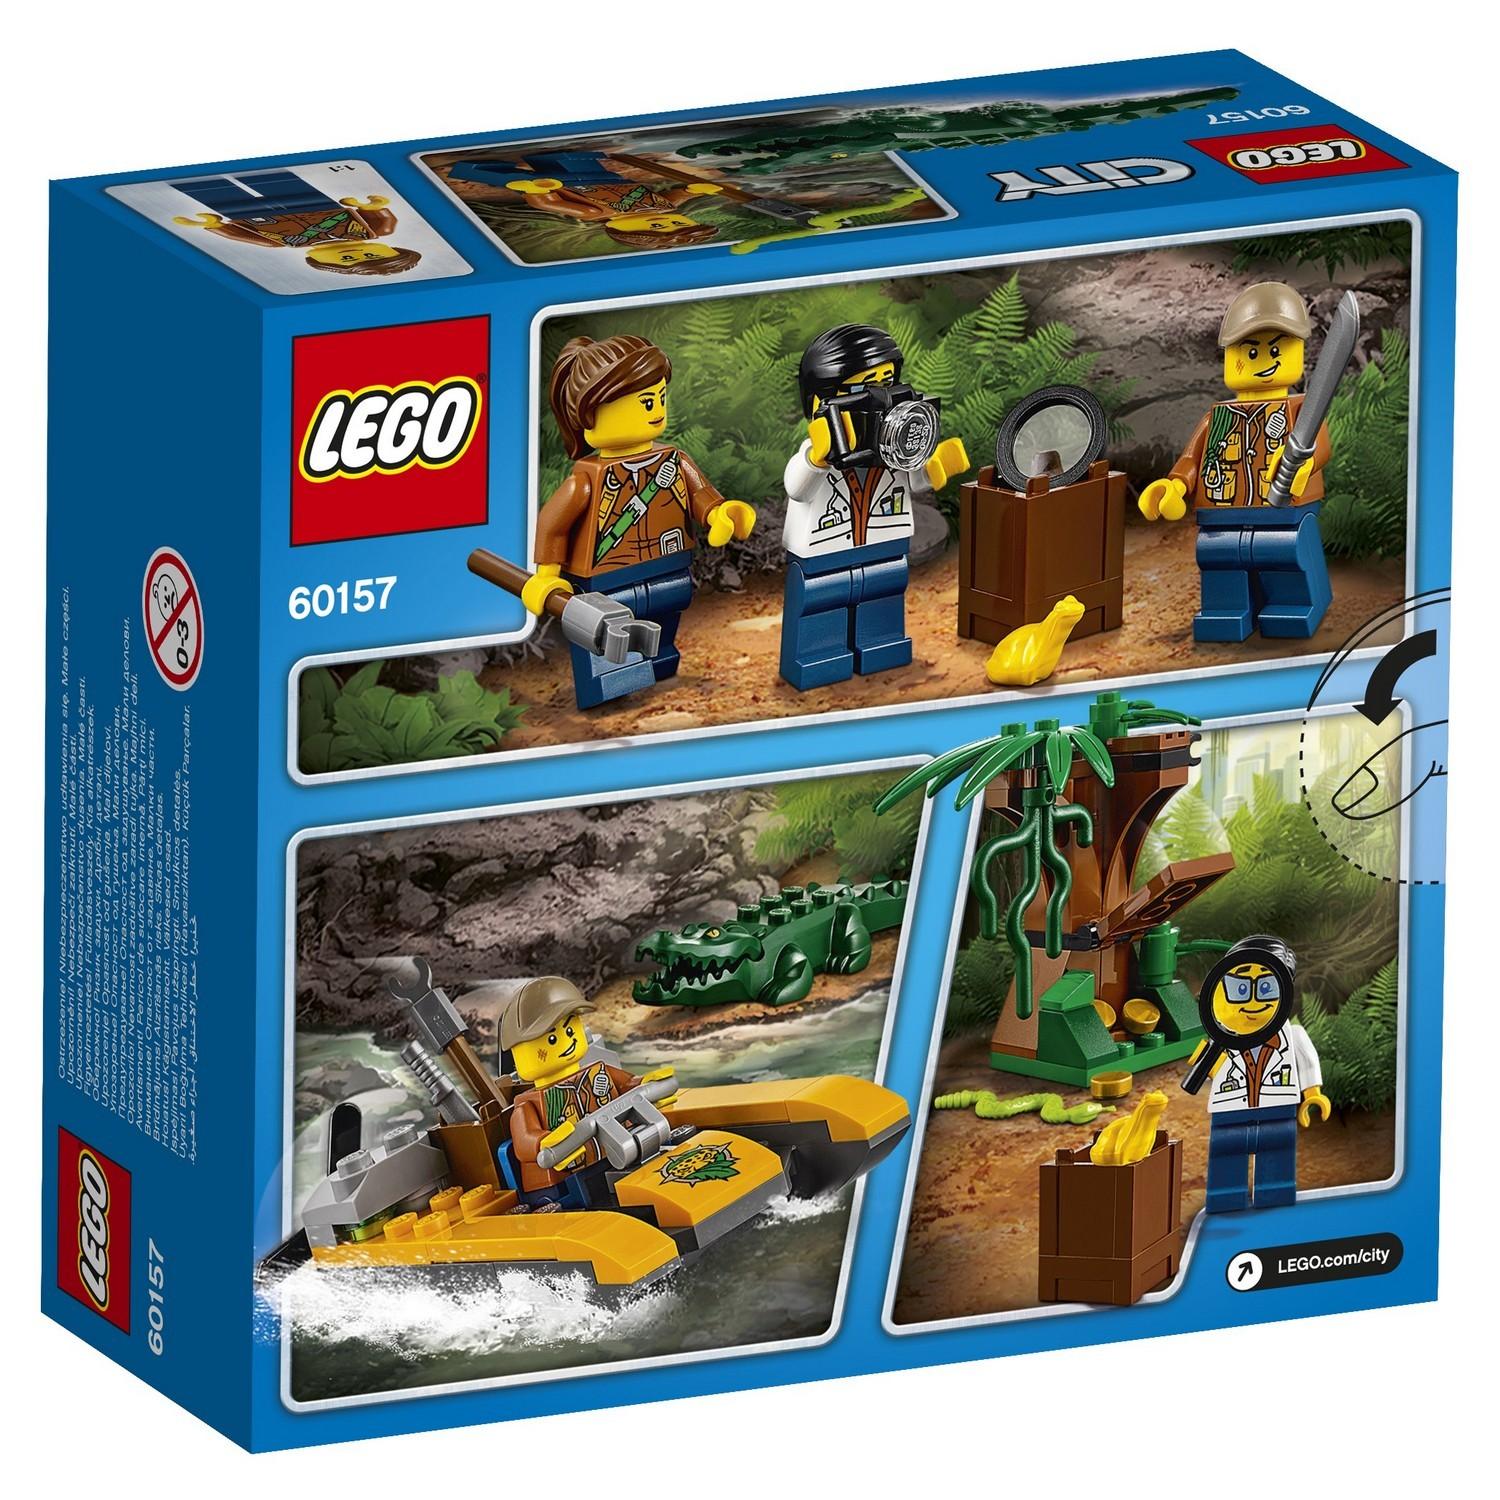 Lego City 60157 Набор Джунгли для начинающих